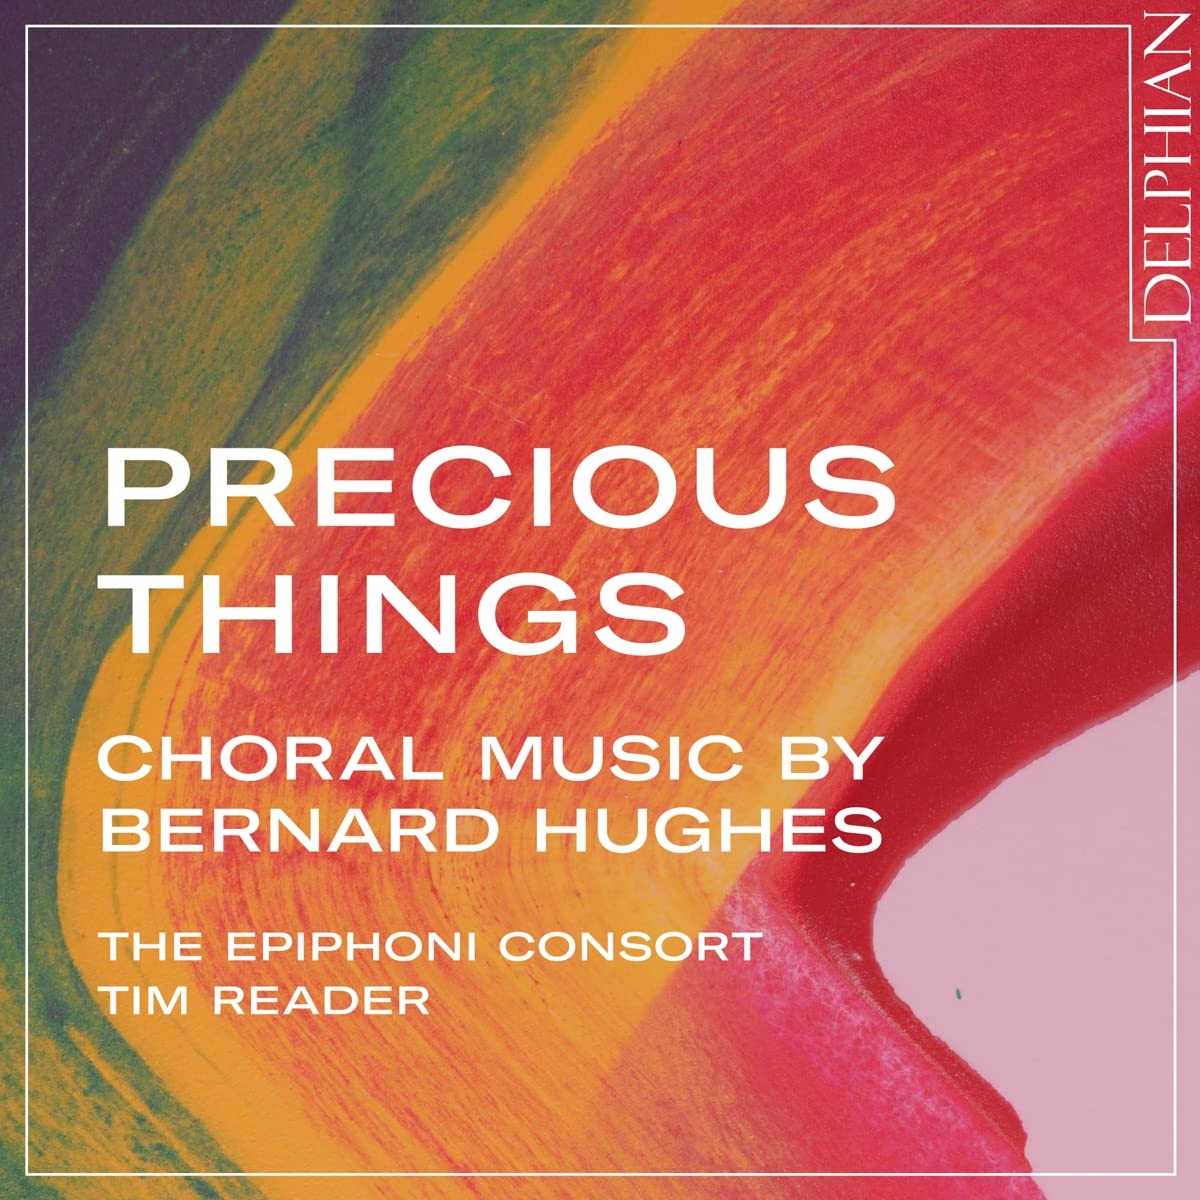 Audio Cd Tim Reader - Precious Things: Choral Music By Bernard Hughes NUOVO SIGILLATO, EDIZIONE DEL 03/06/2022 SUBITO DISPONIBILE